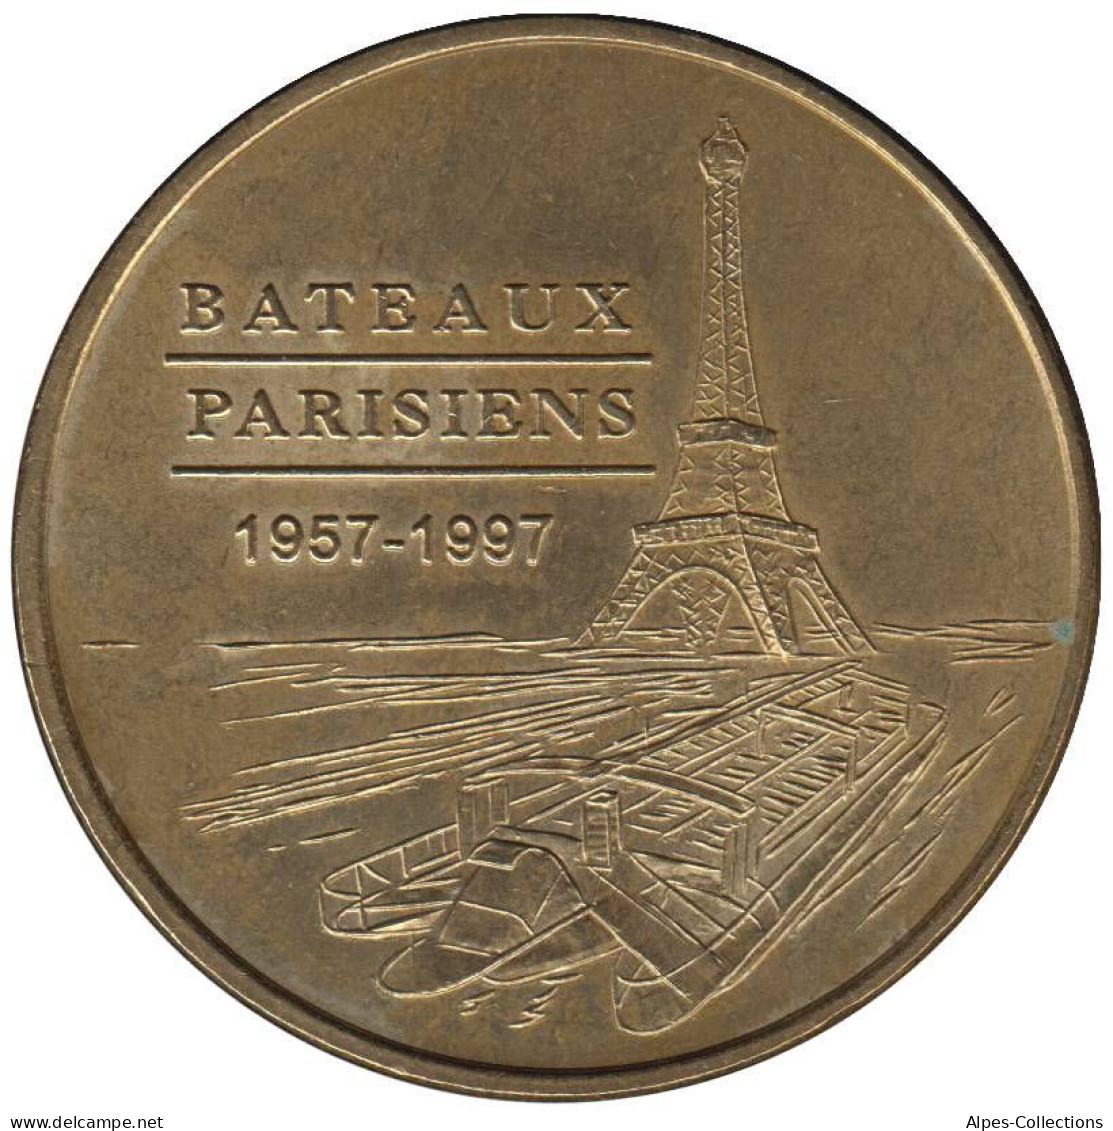 75-0251 - JETON TOURISTIQUE MDP - Bateaux Parisiens - 1957-1997 - 1998.1 - Non-datés